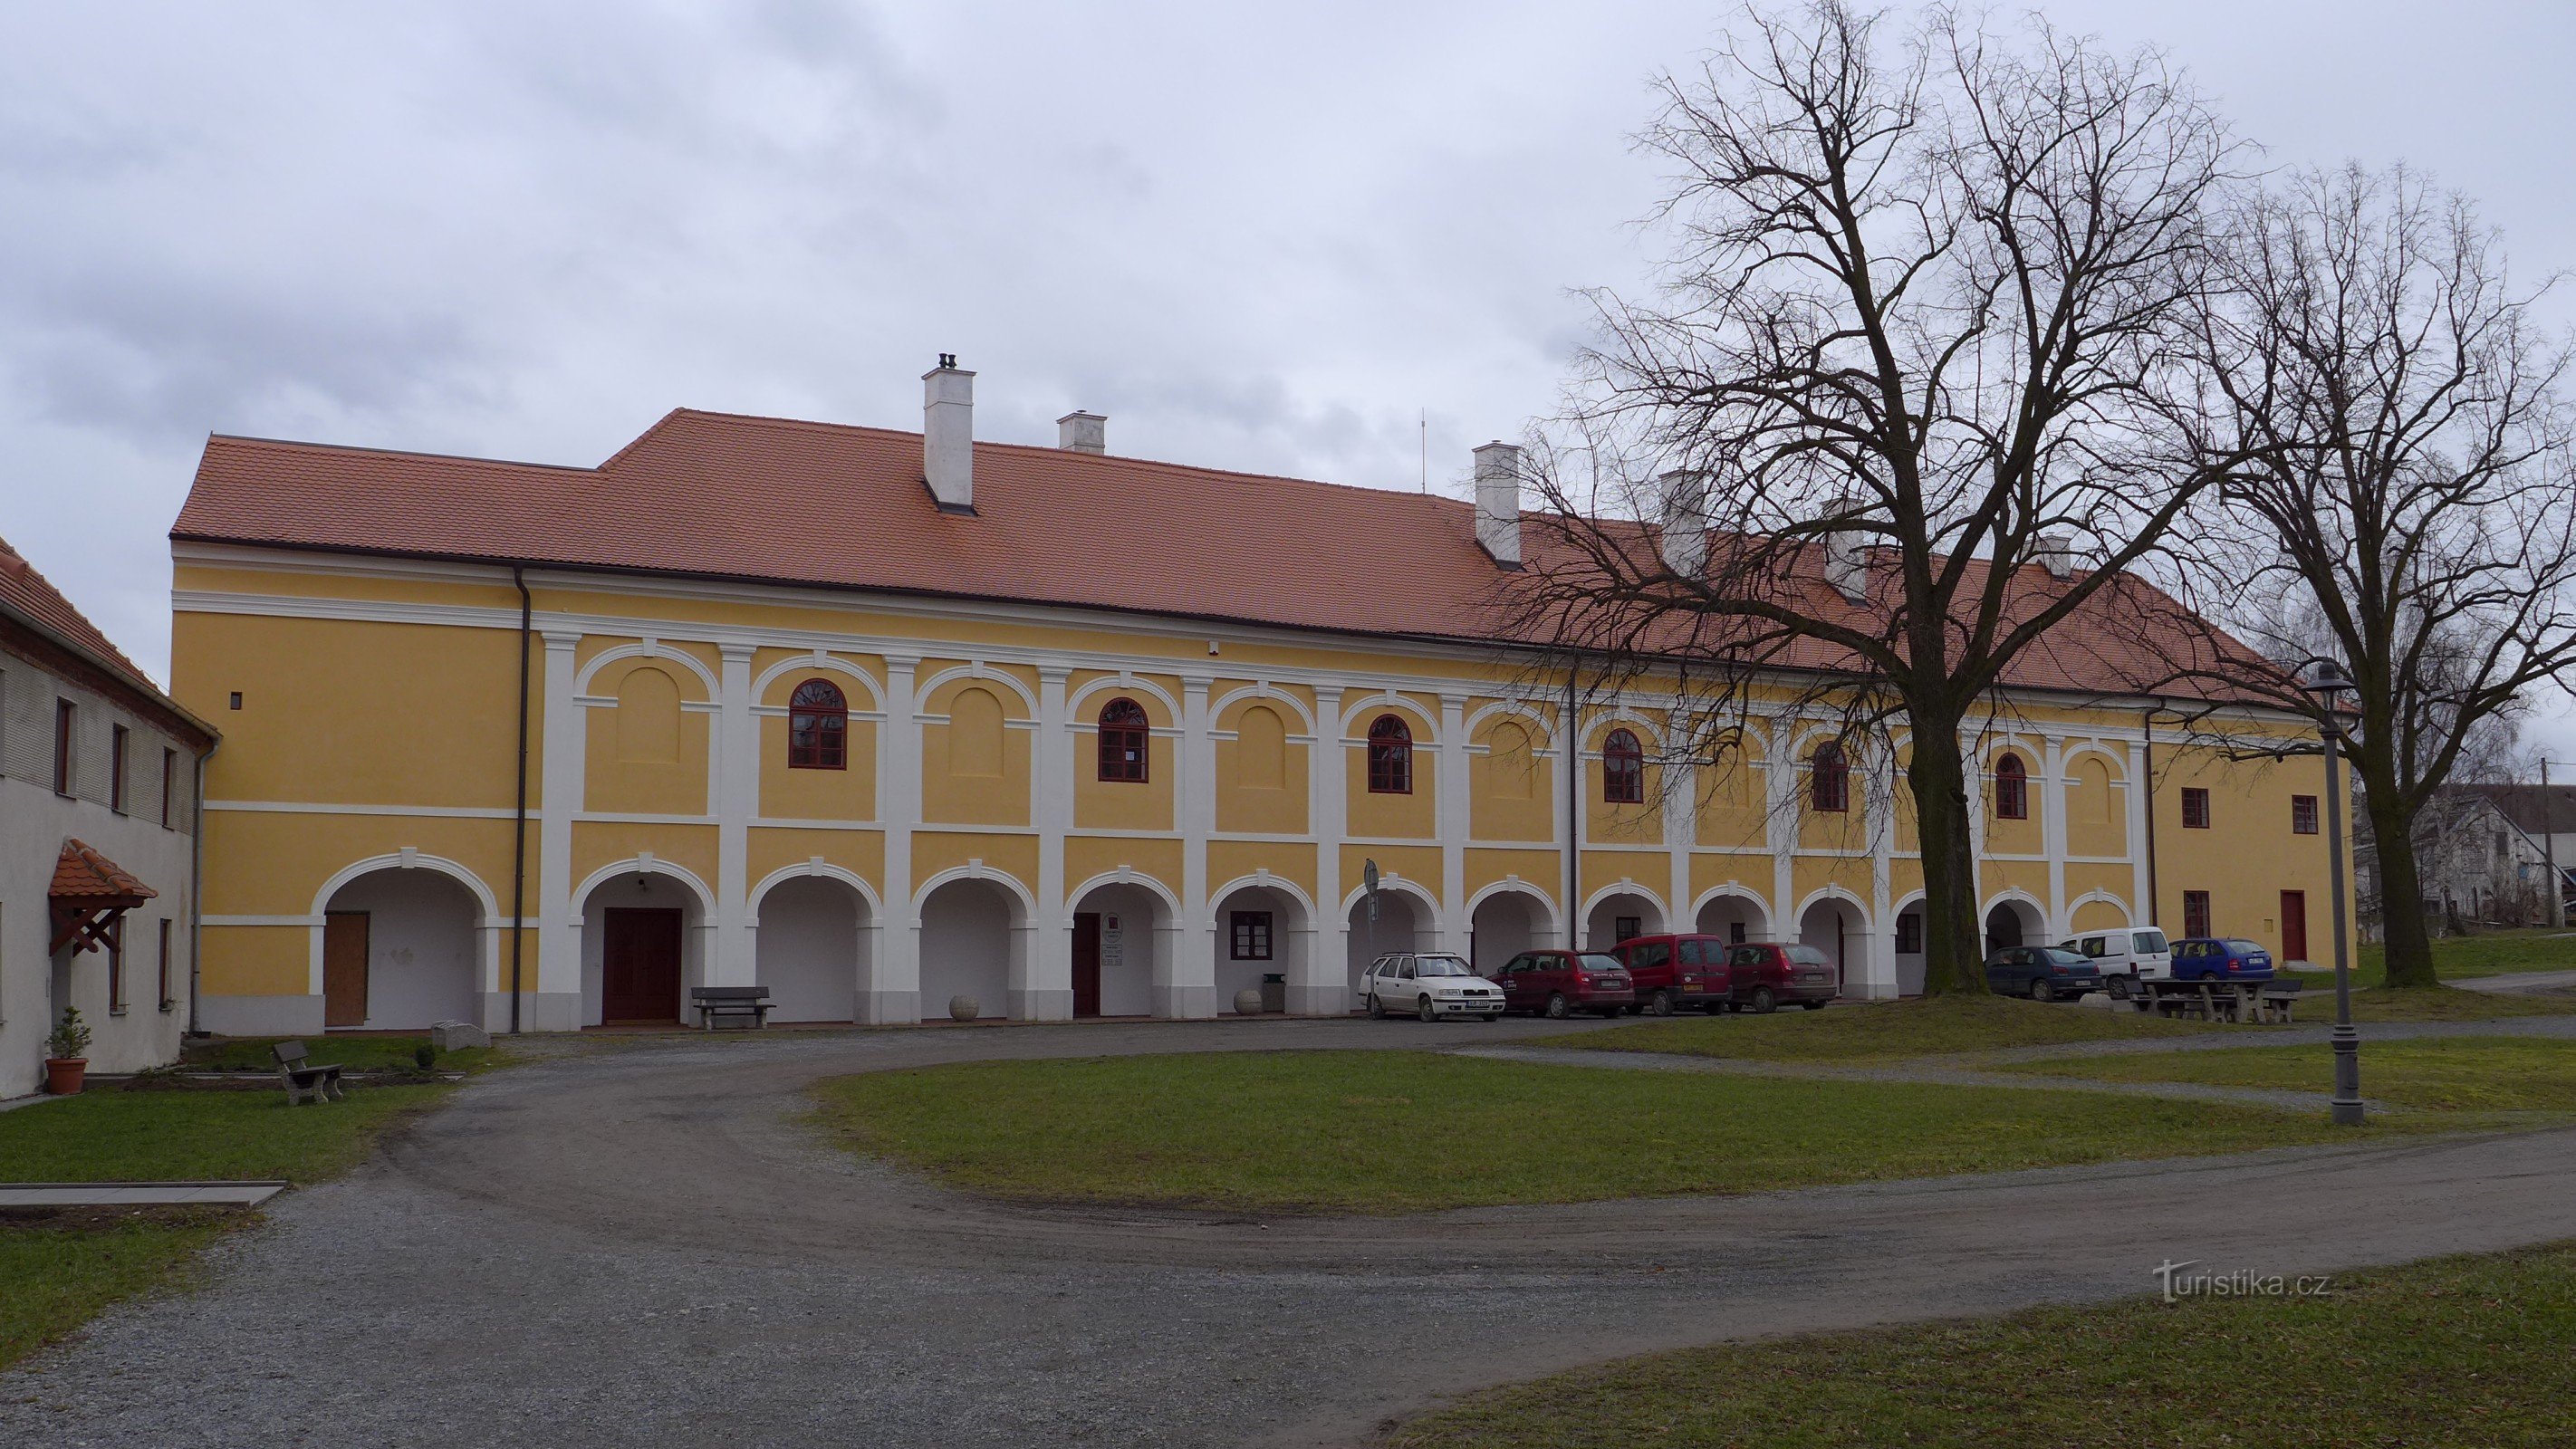 Zamek Okrzyszki